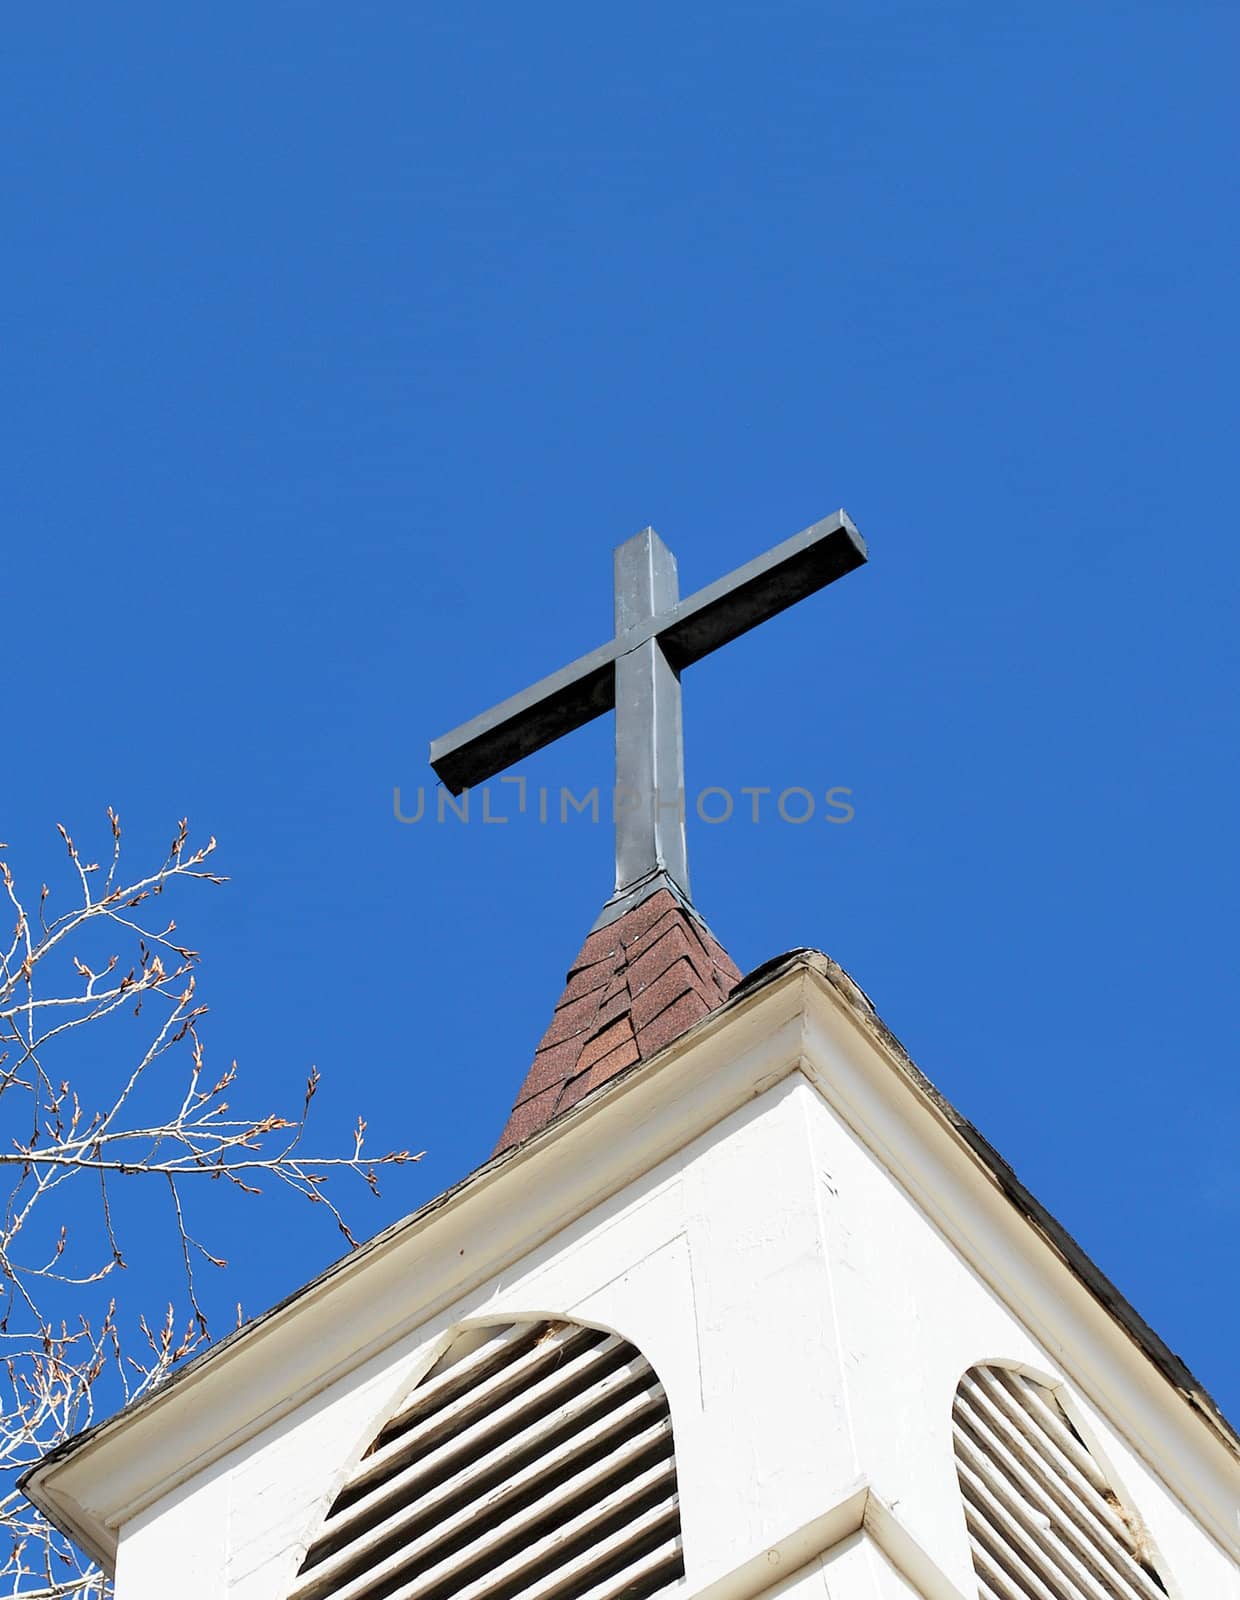 Church steeple against a clear blue sky.